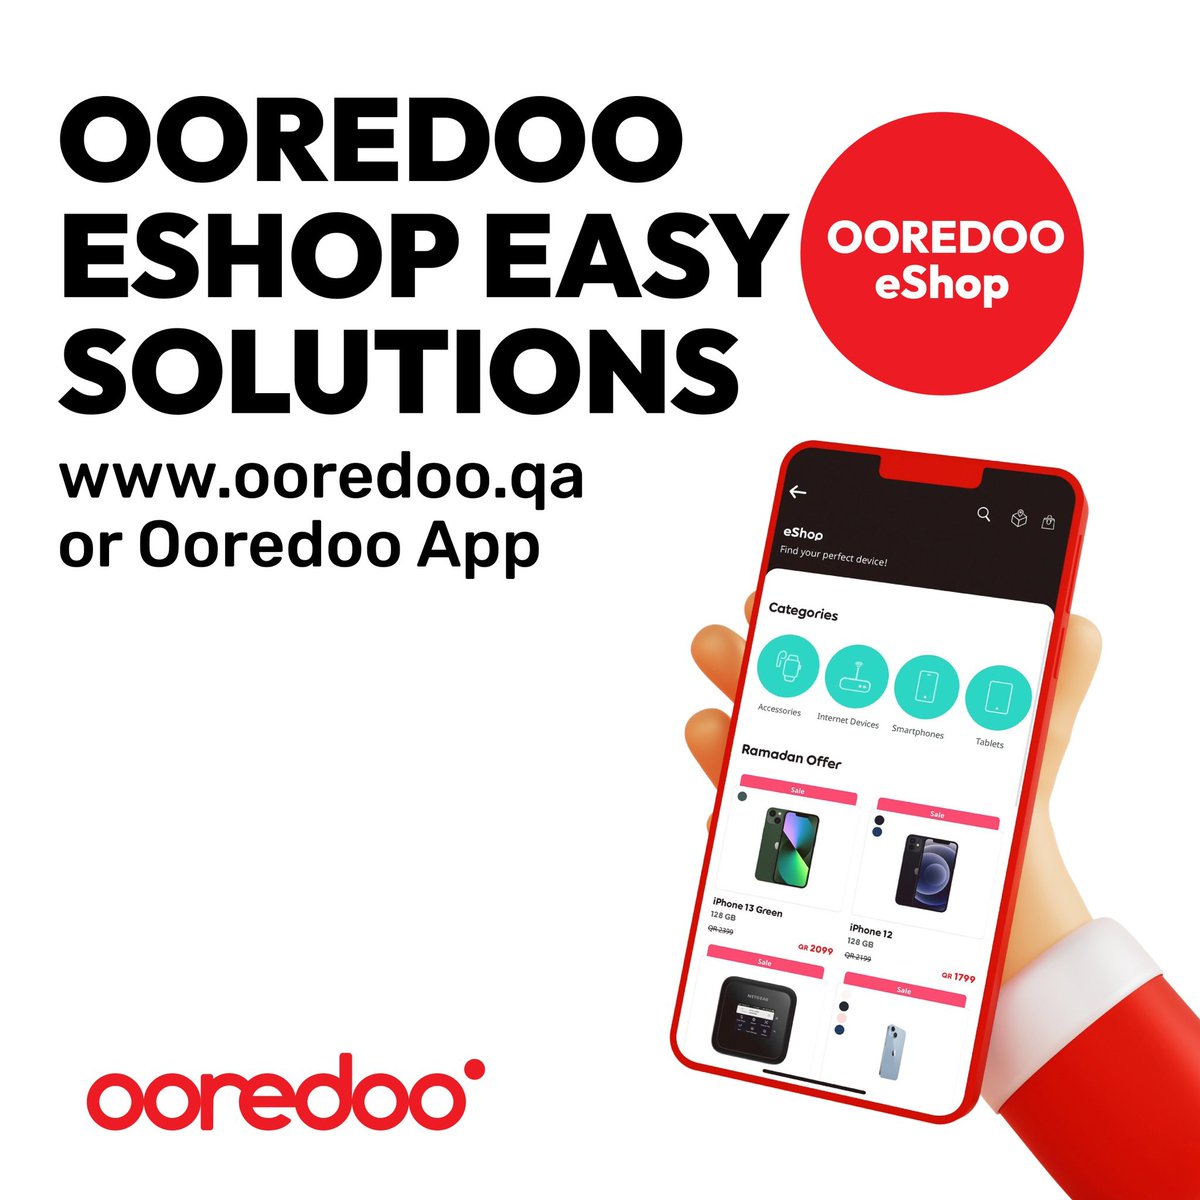 🔴 Ooredoo eShop Easy Solutions ooredoo.qa or Ooredoo App #UpgradeYourWorld #Ooredoo